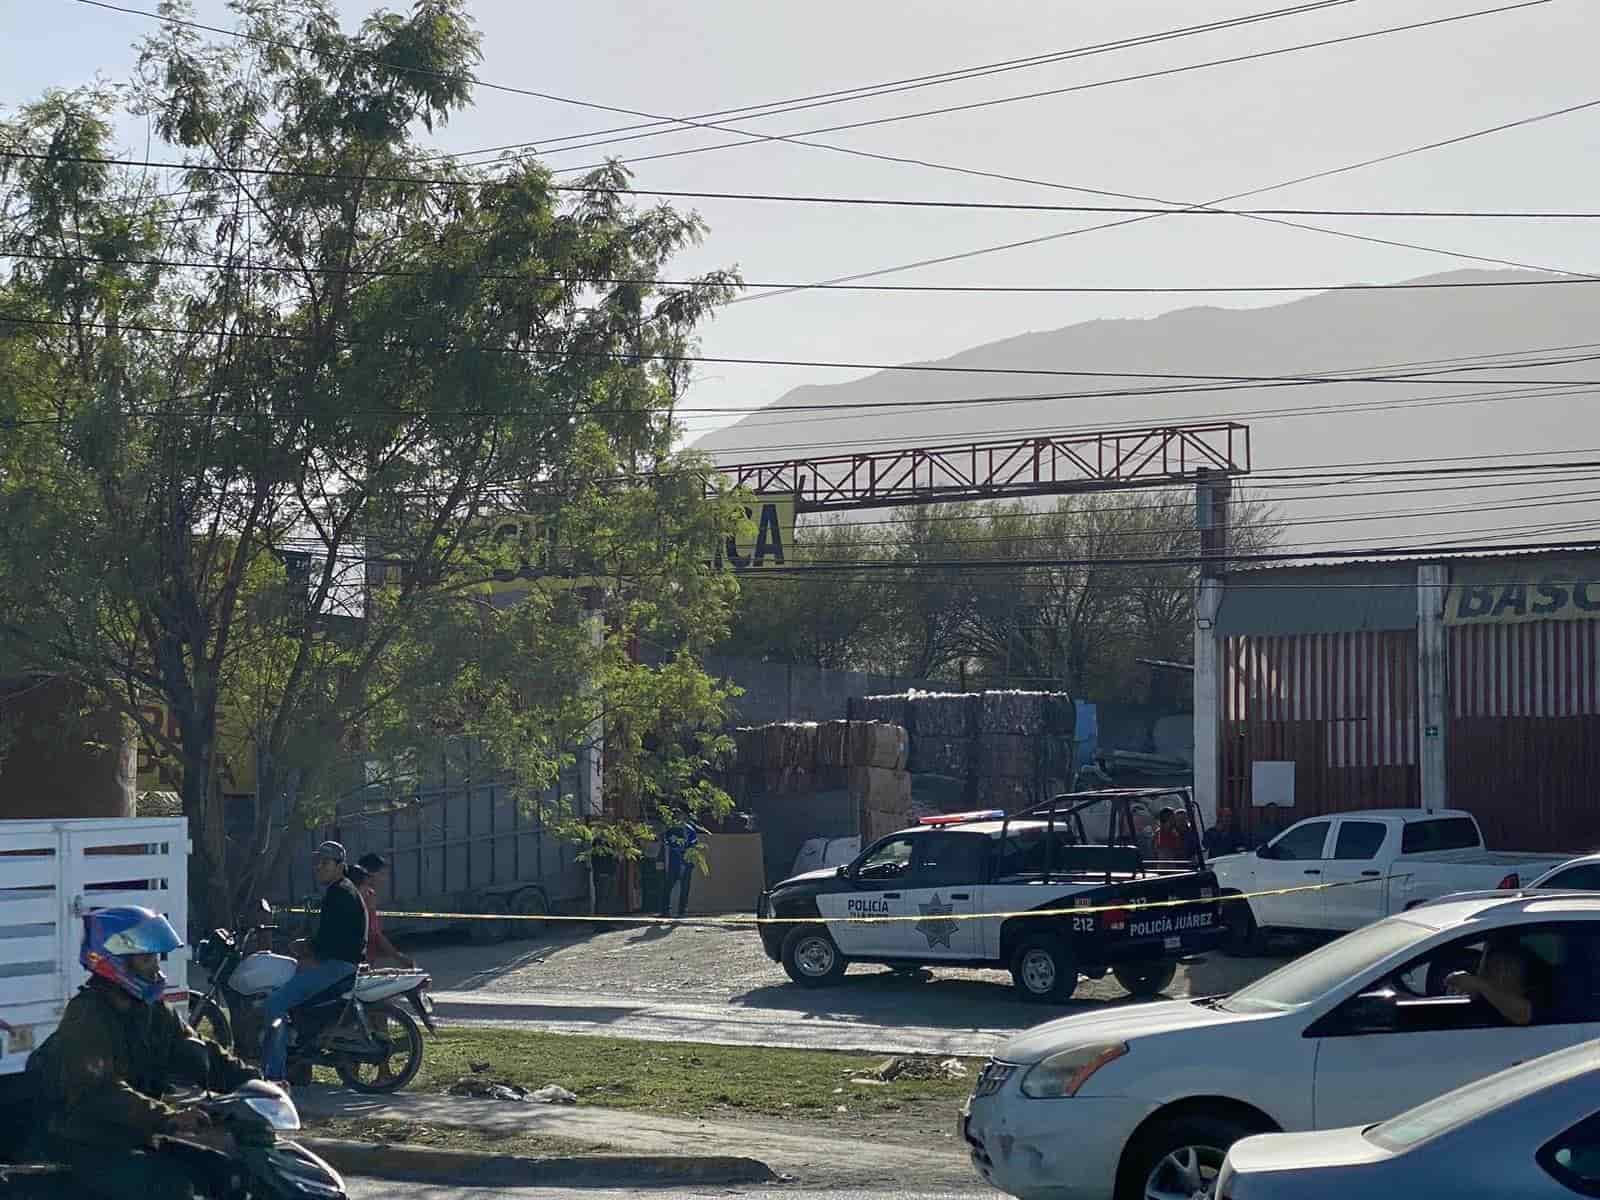 Hombres armados atacaron a balazos la fachada de un negocio de compra-venta de chatarra, ubicado en el municipio de Juárez.